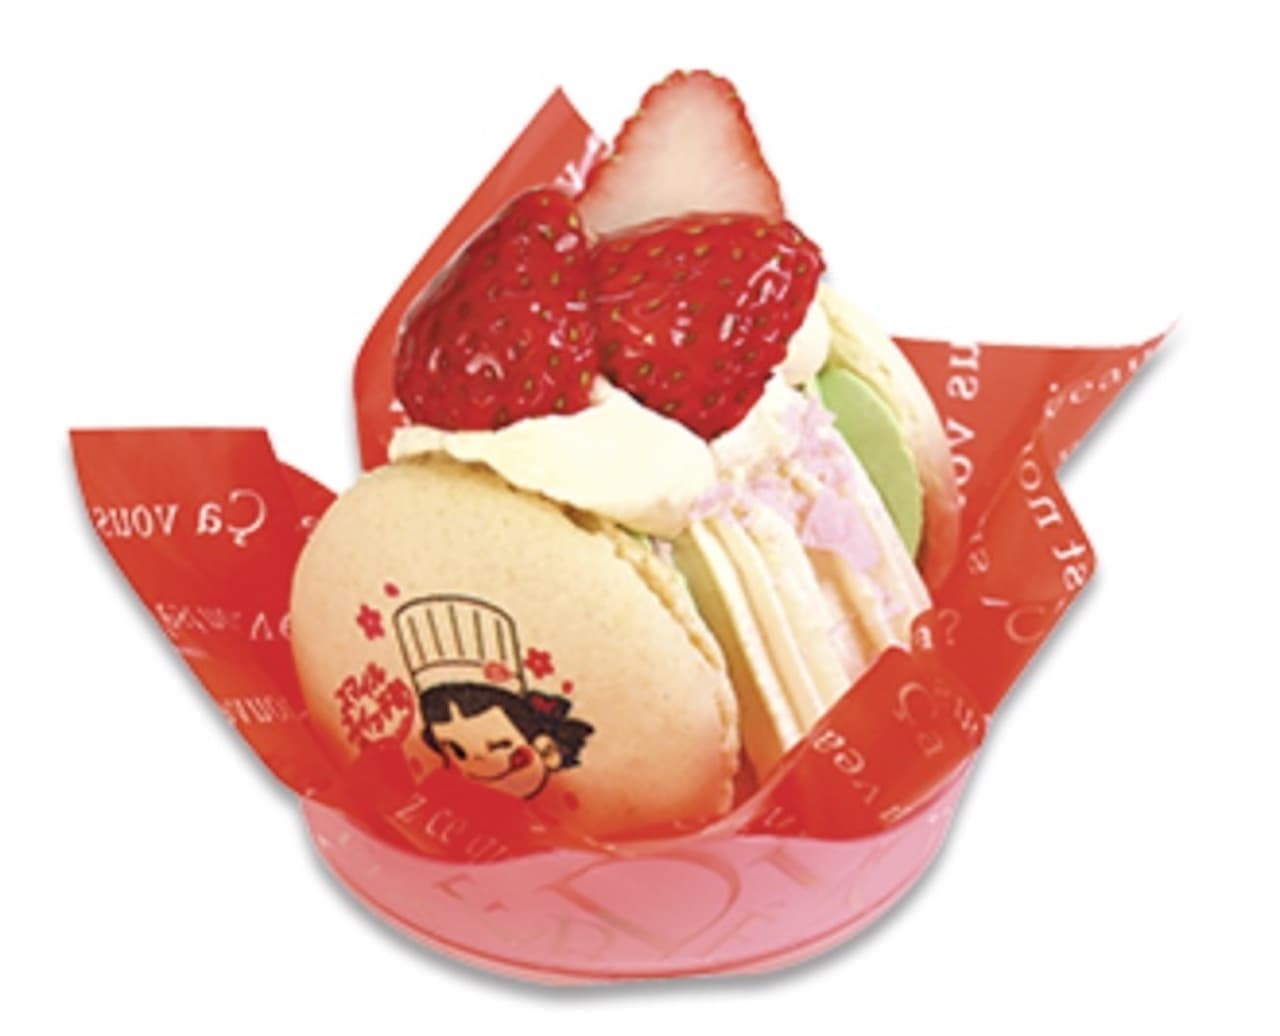 Fujiya "Together! SmileSwitch! Strawberry Happy Tuncalon